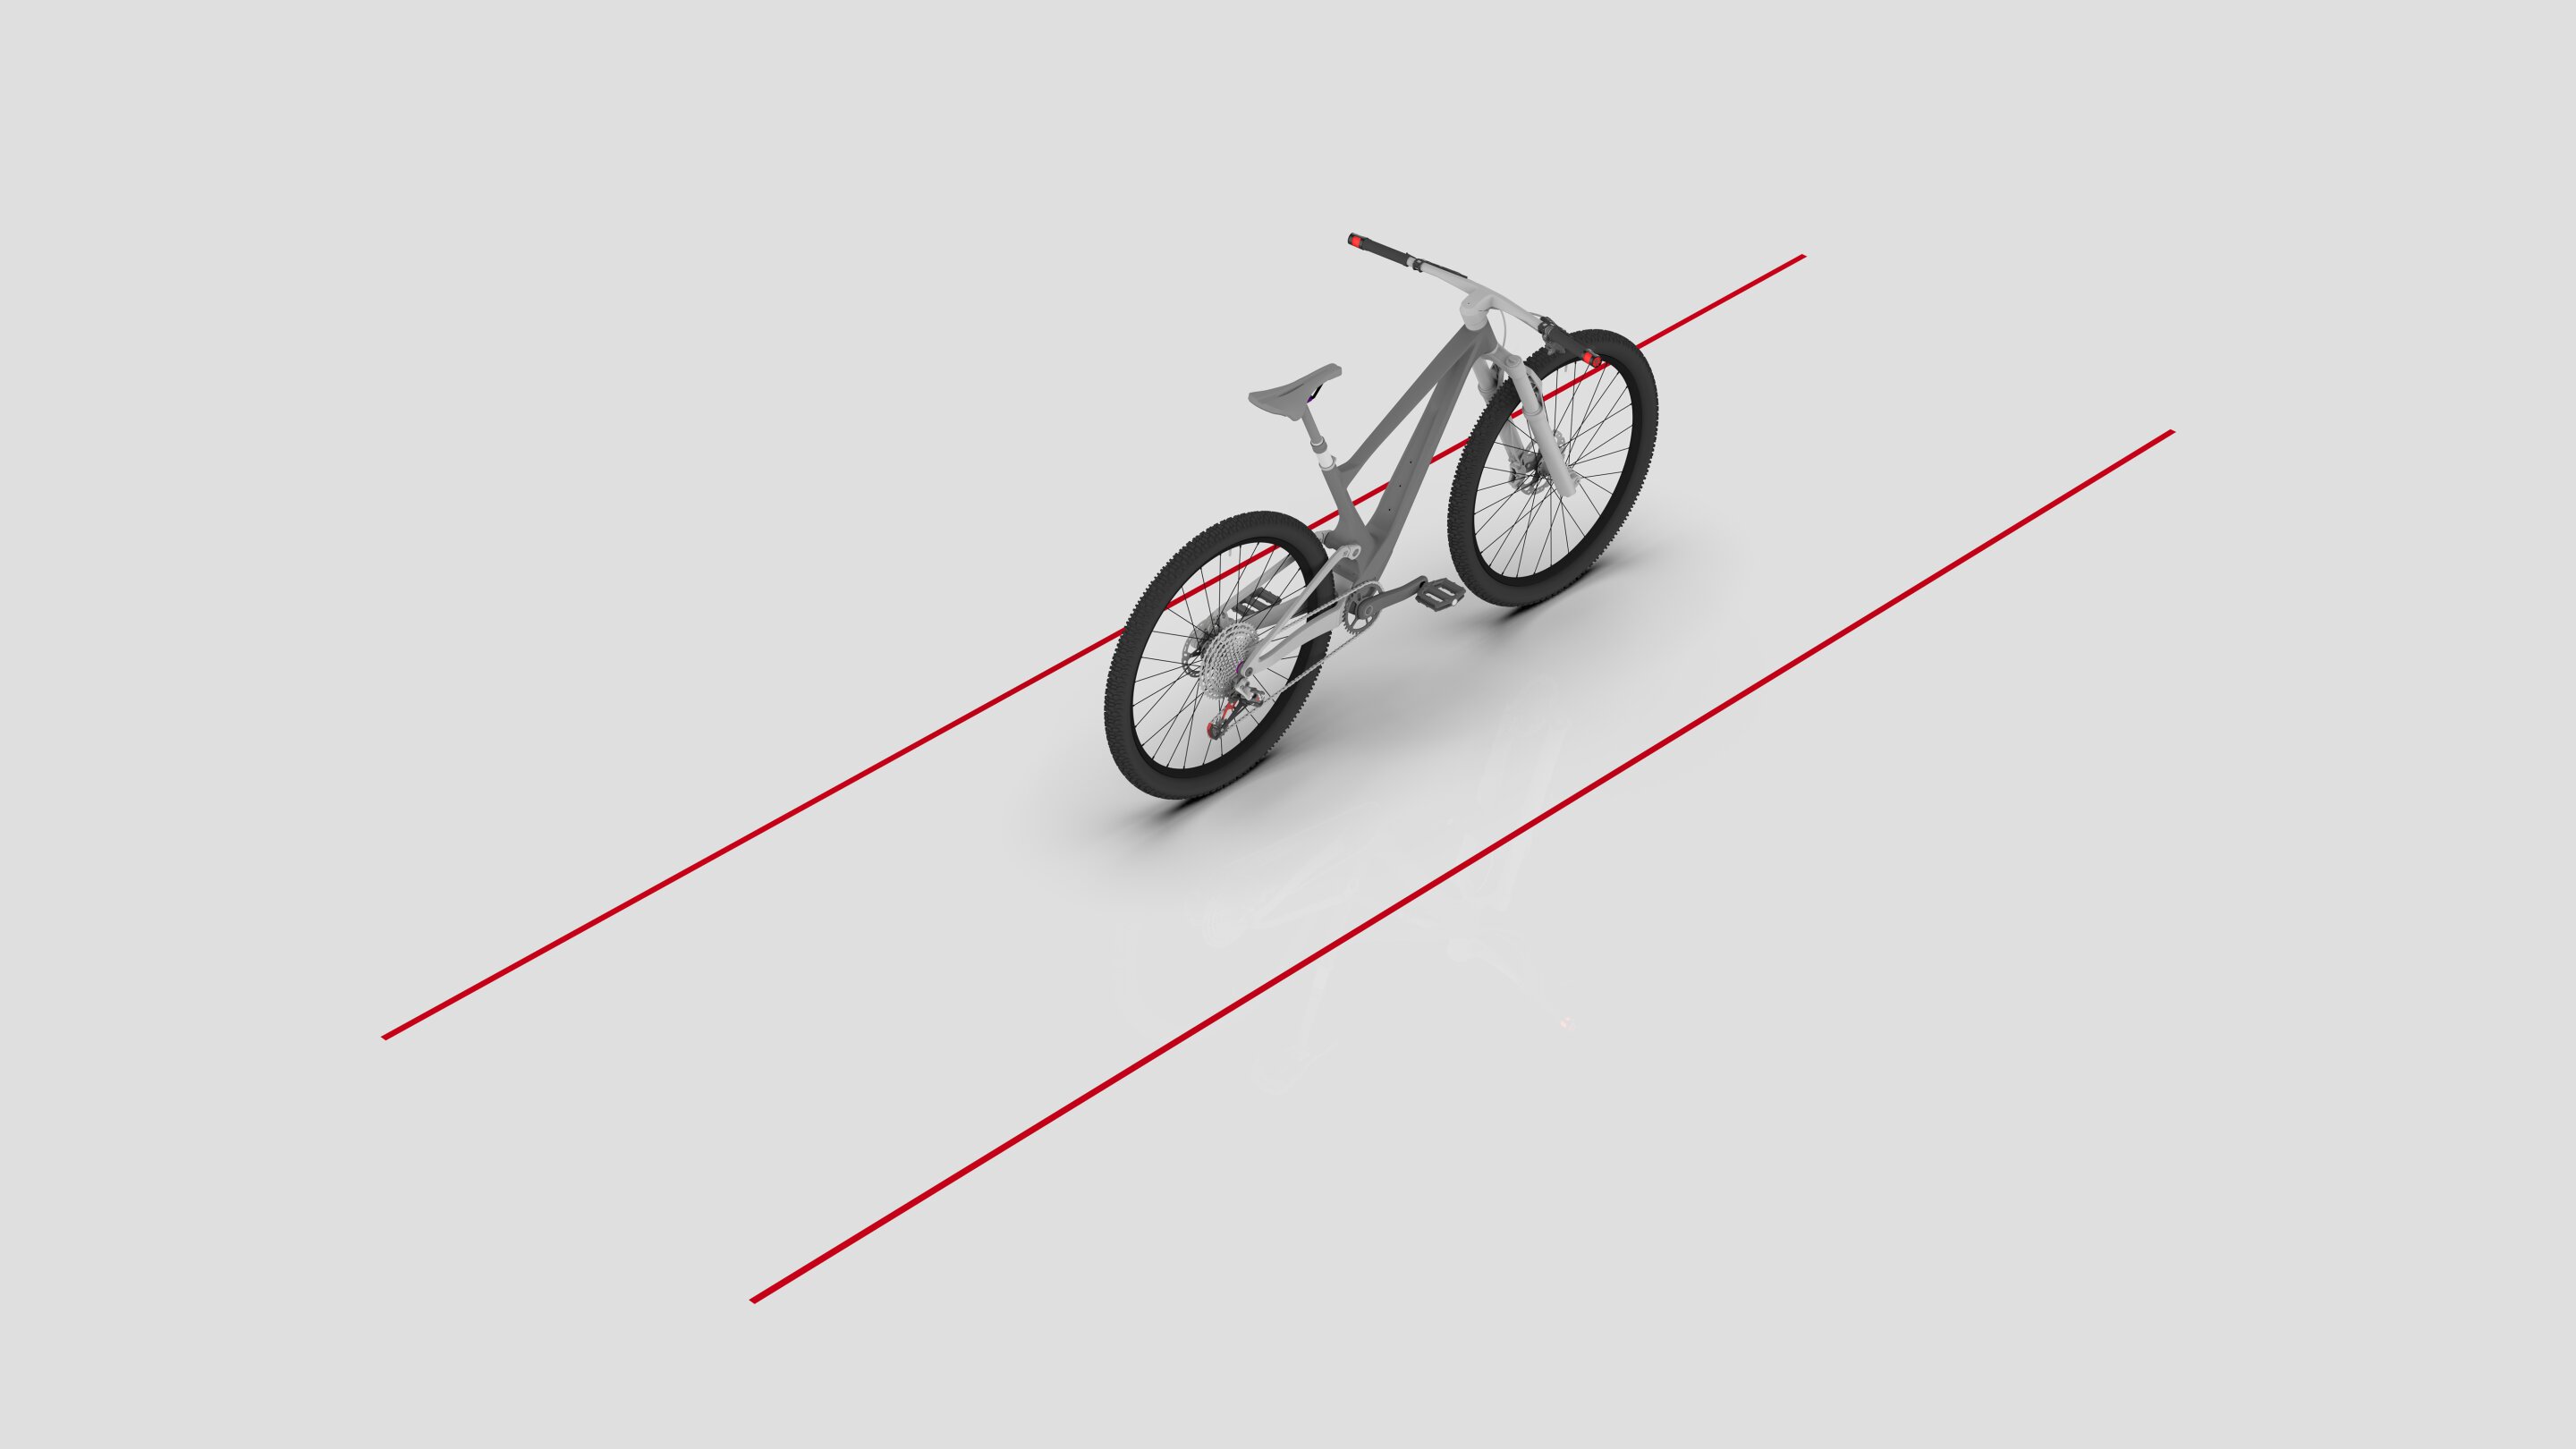 Nowy pas laserowy z ekranem dotykowym, aby zapewnić bezpieczeństwo rowerzystom